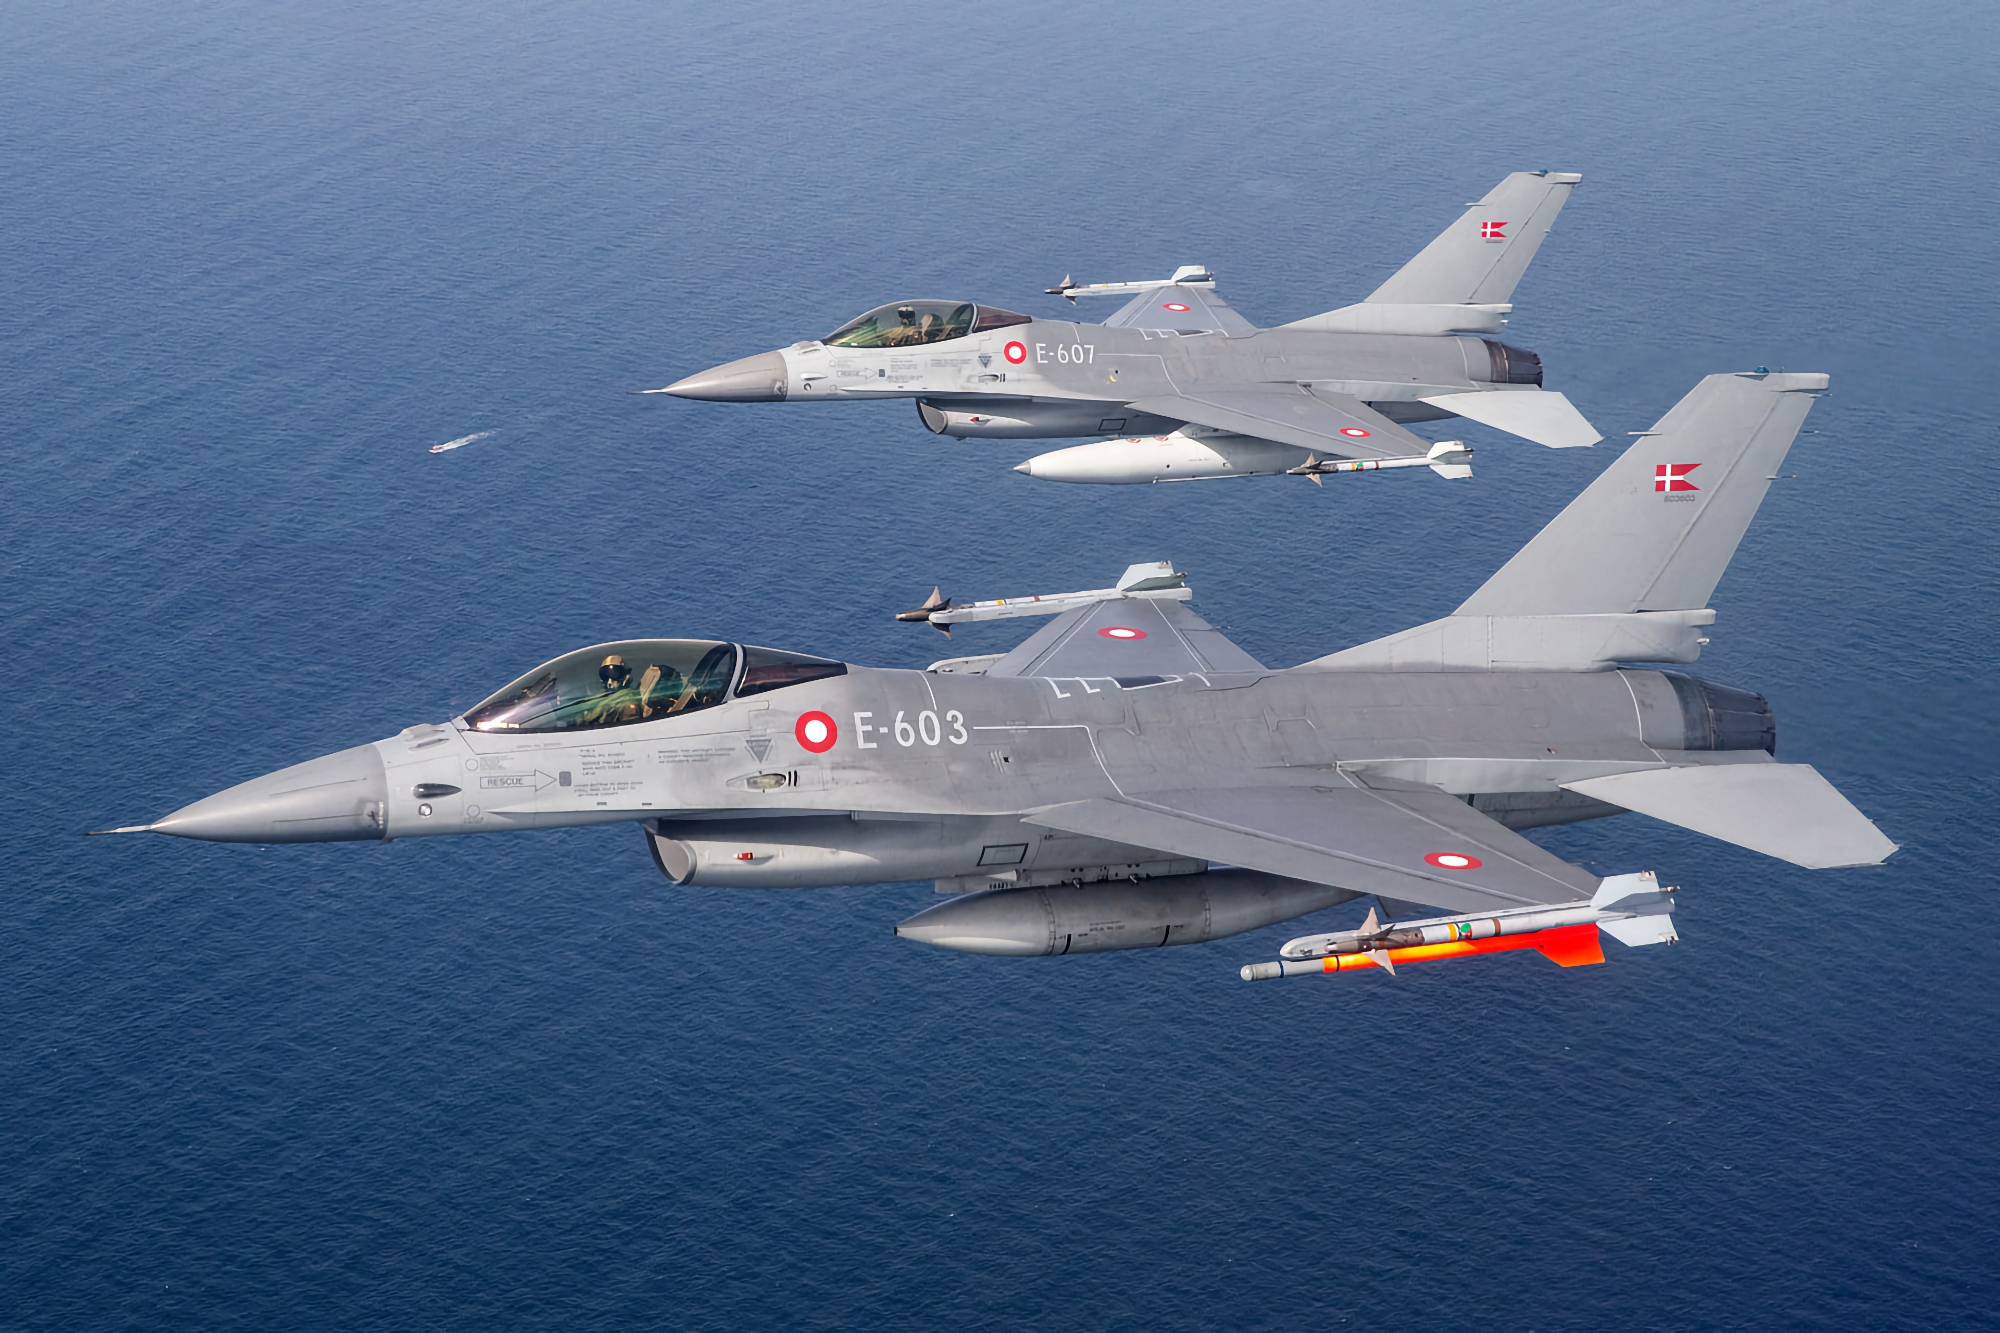 La Danimarca comunica quando trasferirà i primi caccia F-16 Fighting Falcon in Ucraina